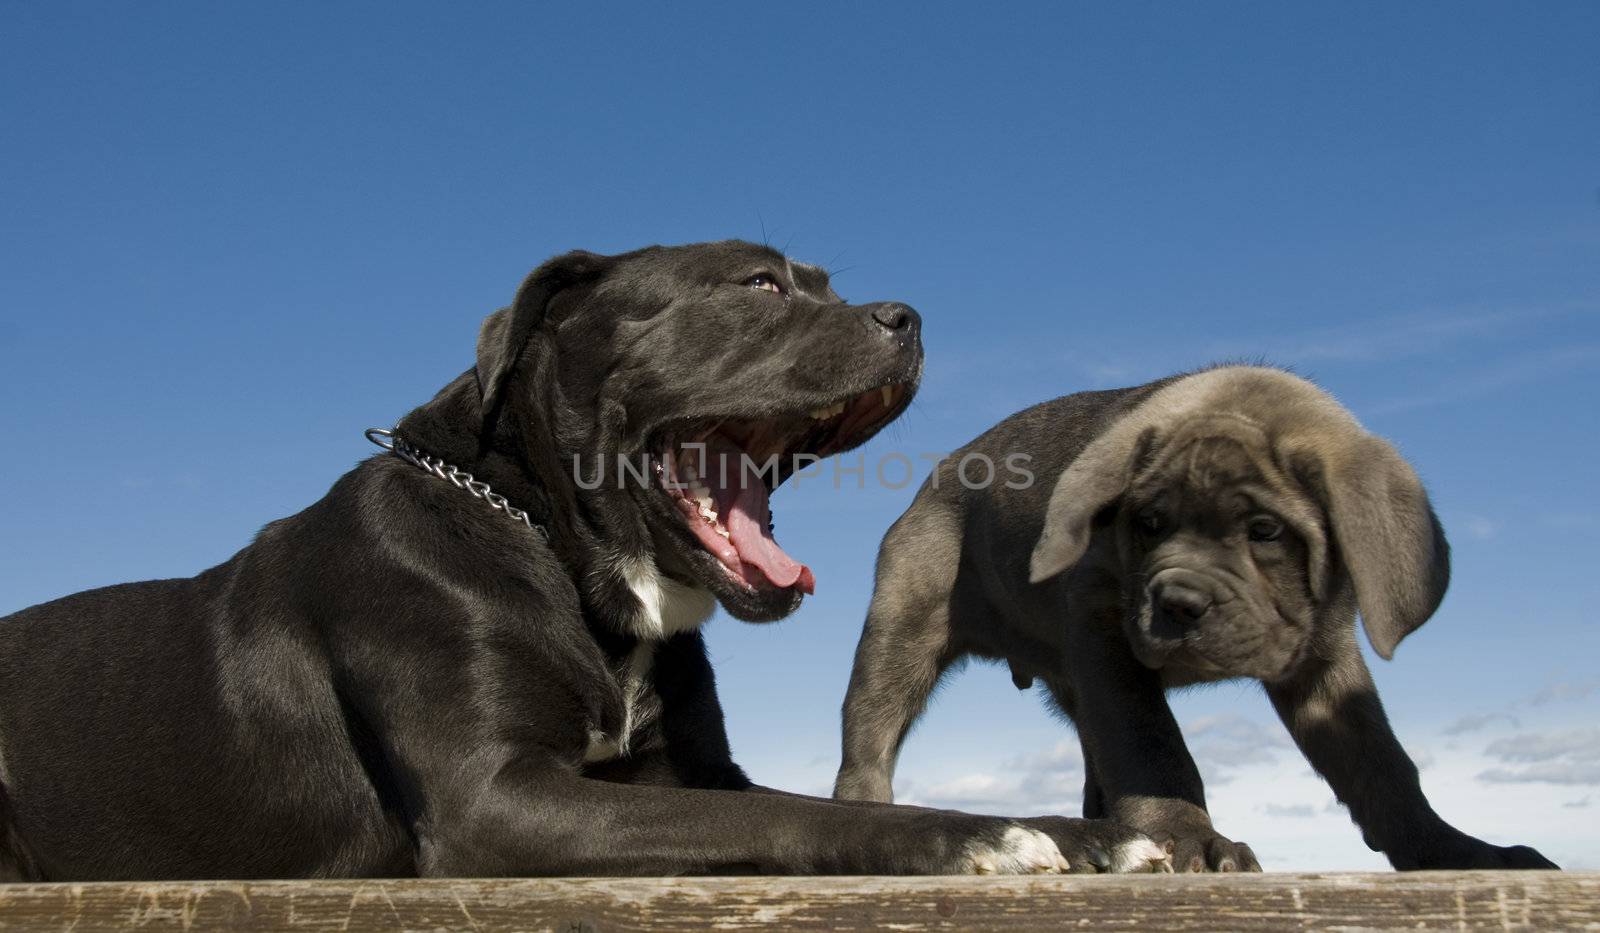 italian mastiff mother and puppy by cynoclub